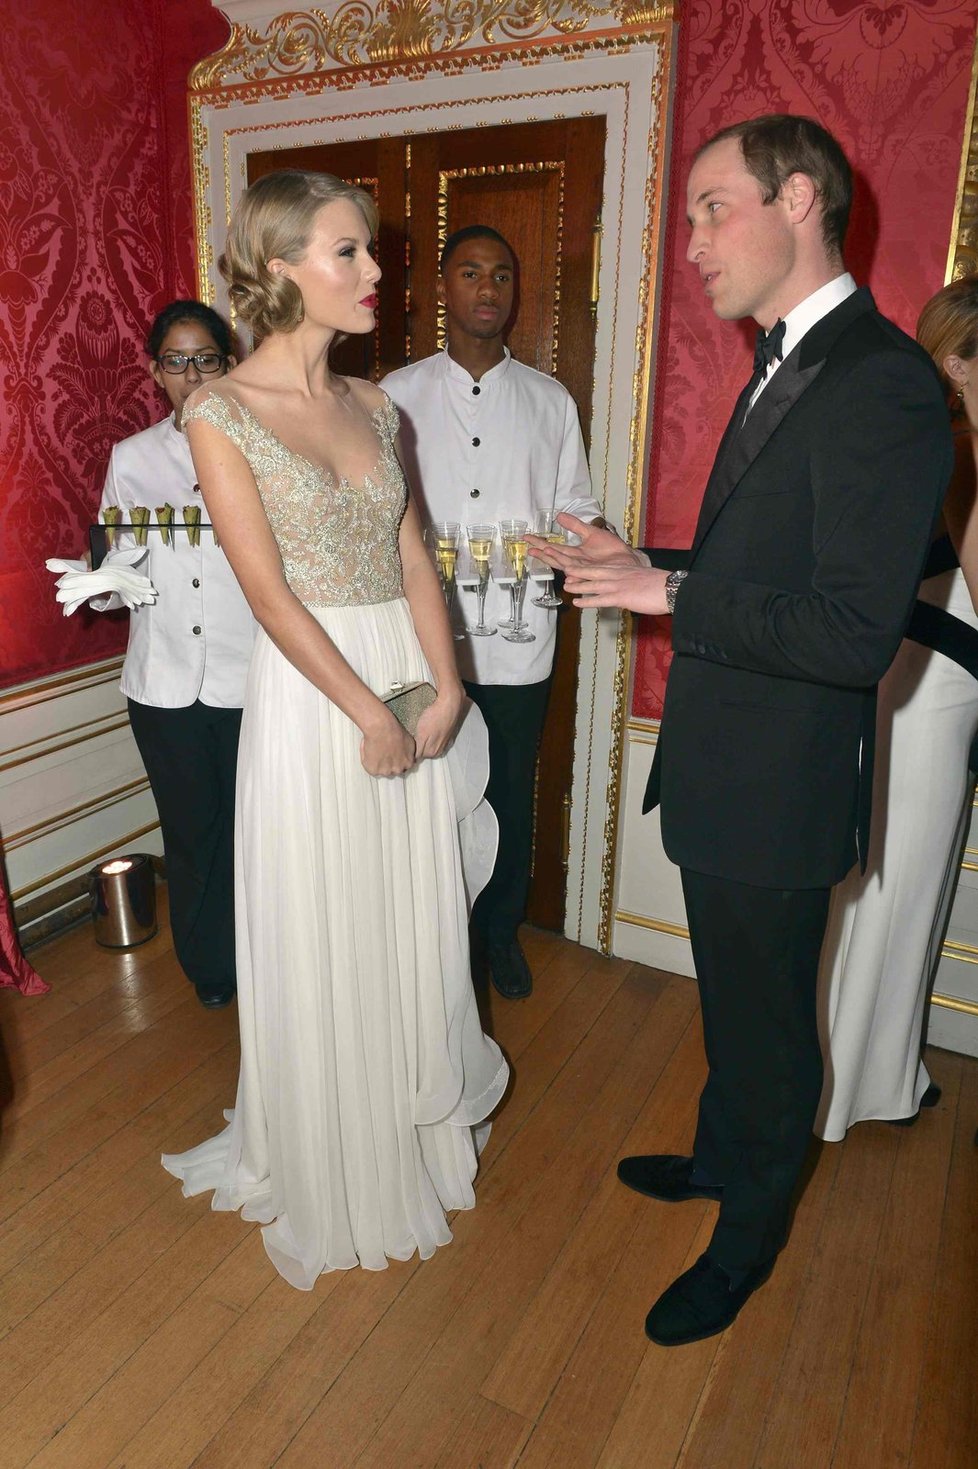 Taylor poprvé zpívala v paláci a hned před britským princem